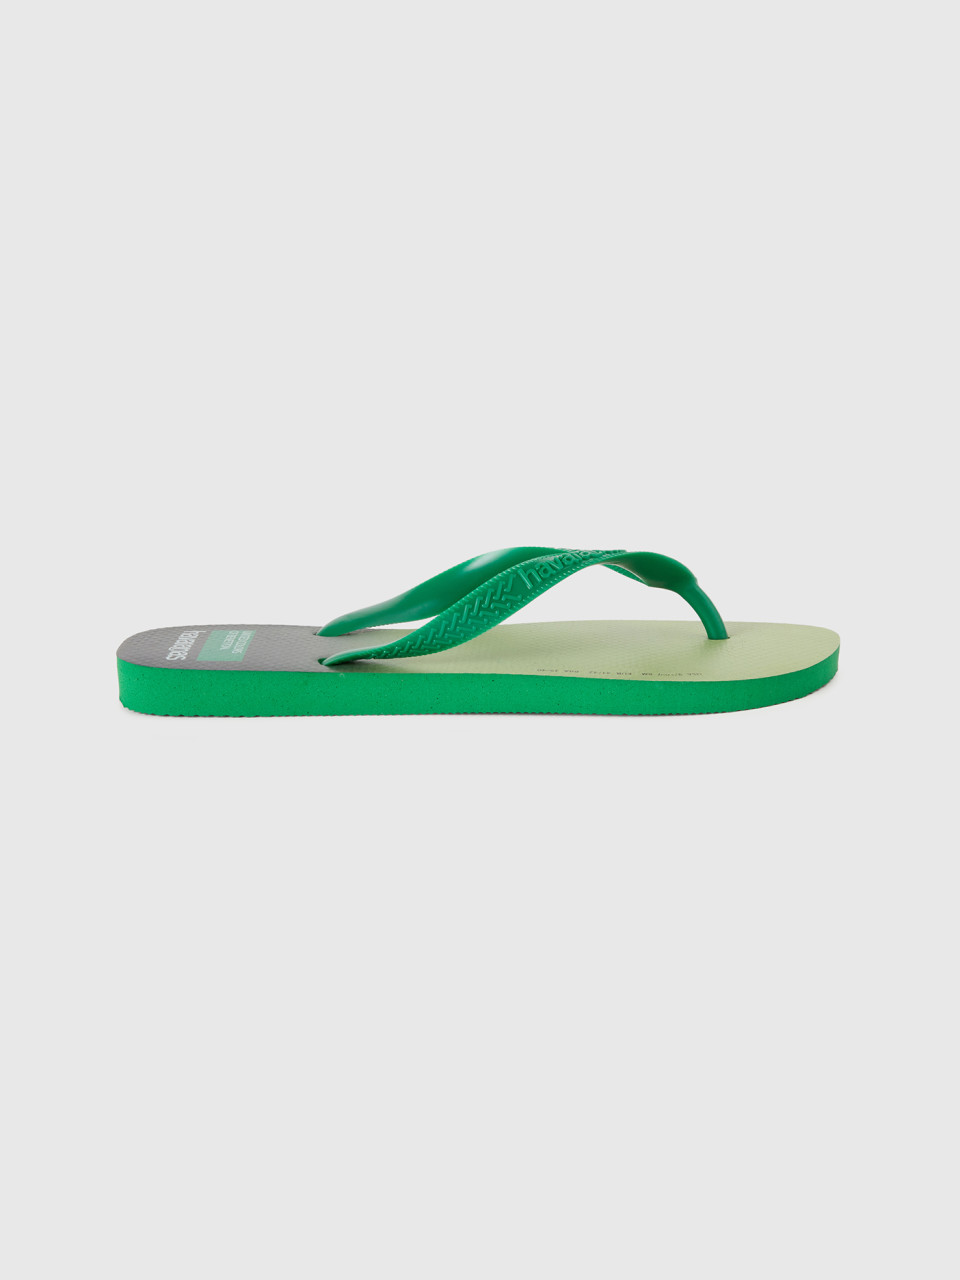 Benetton, Light Green Havaianas Flip Flops,5, Light Green